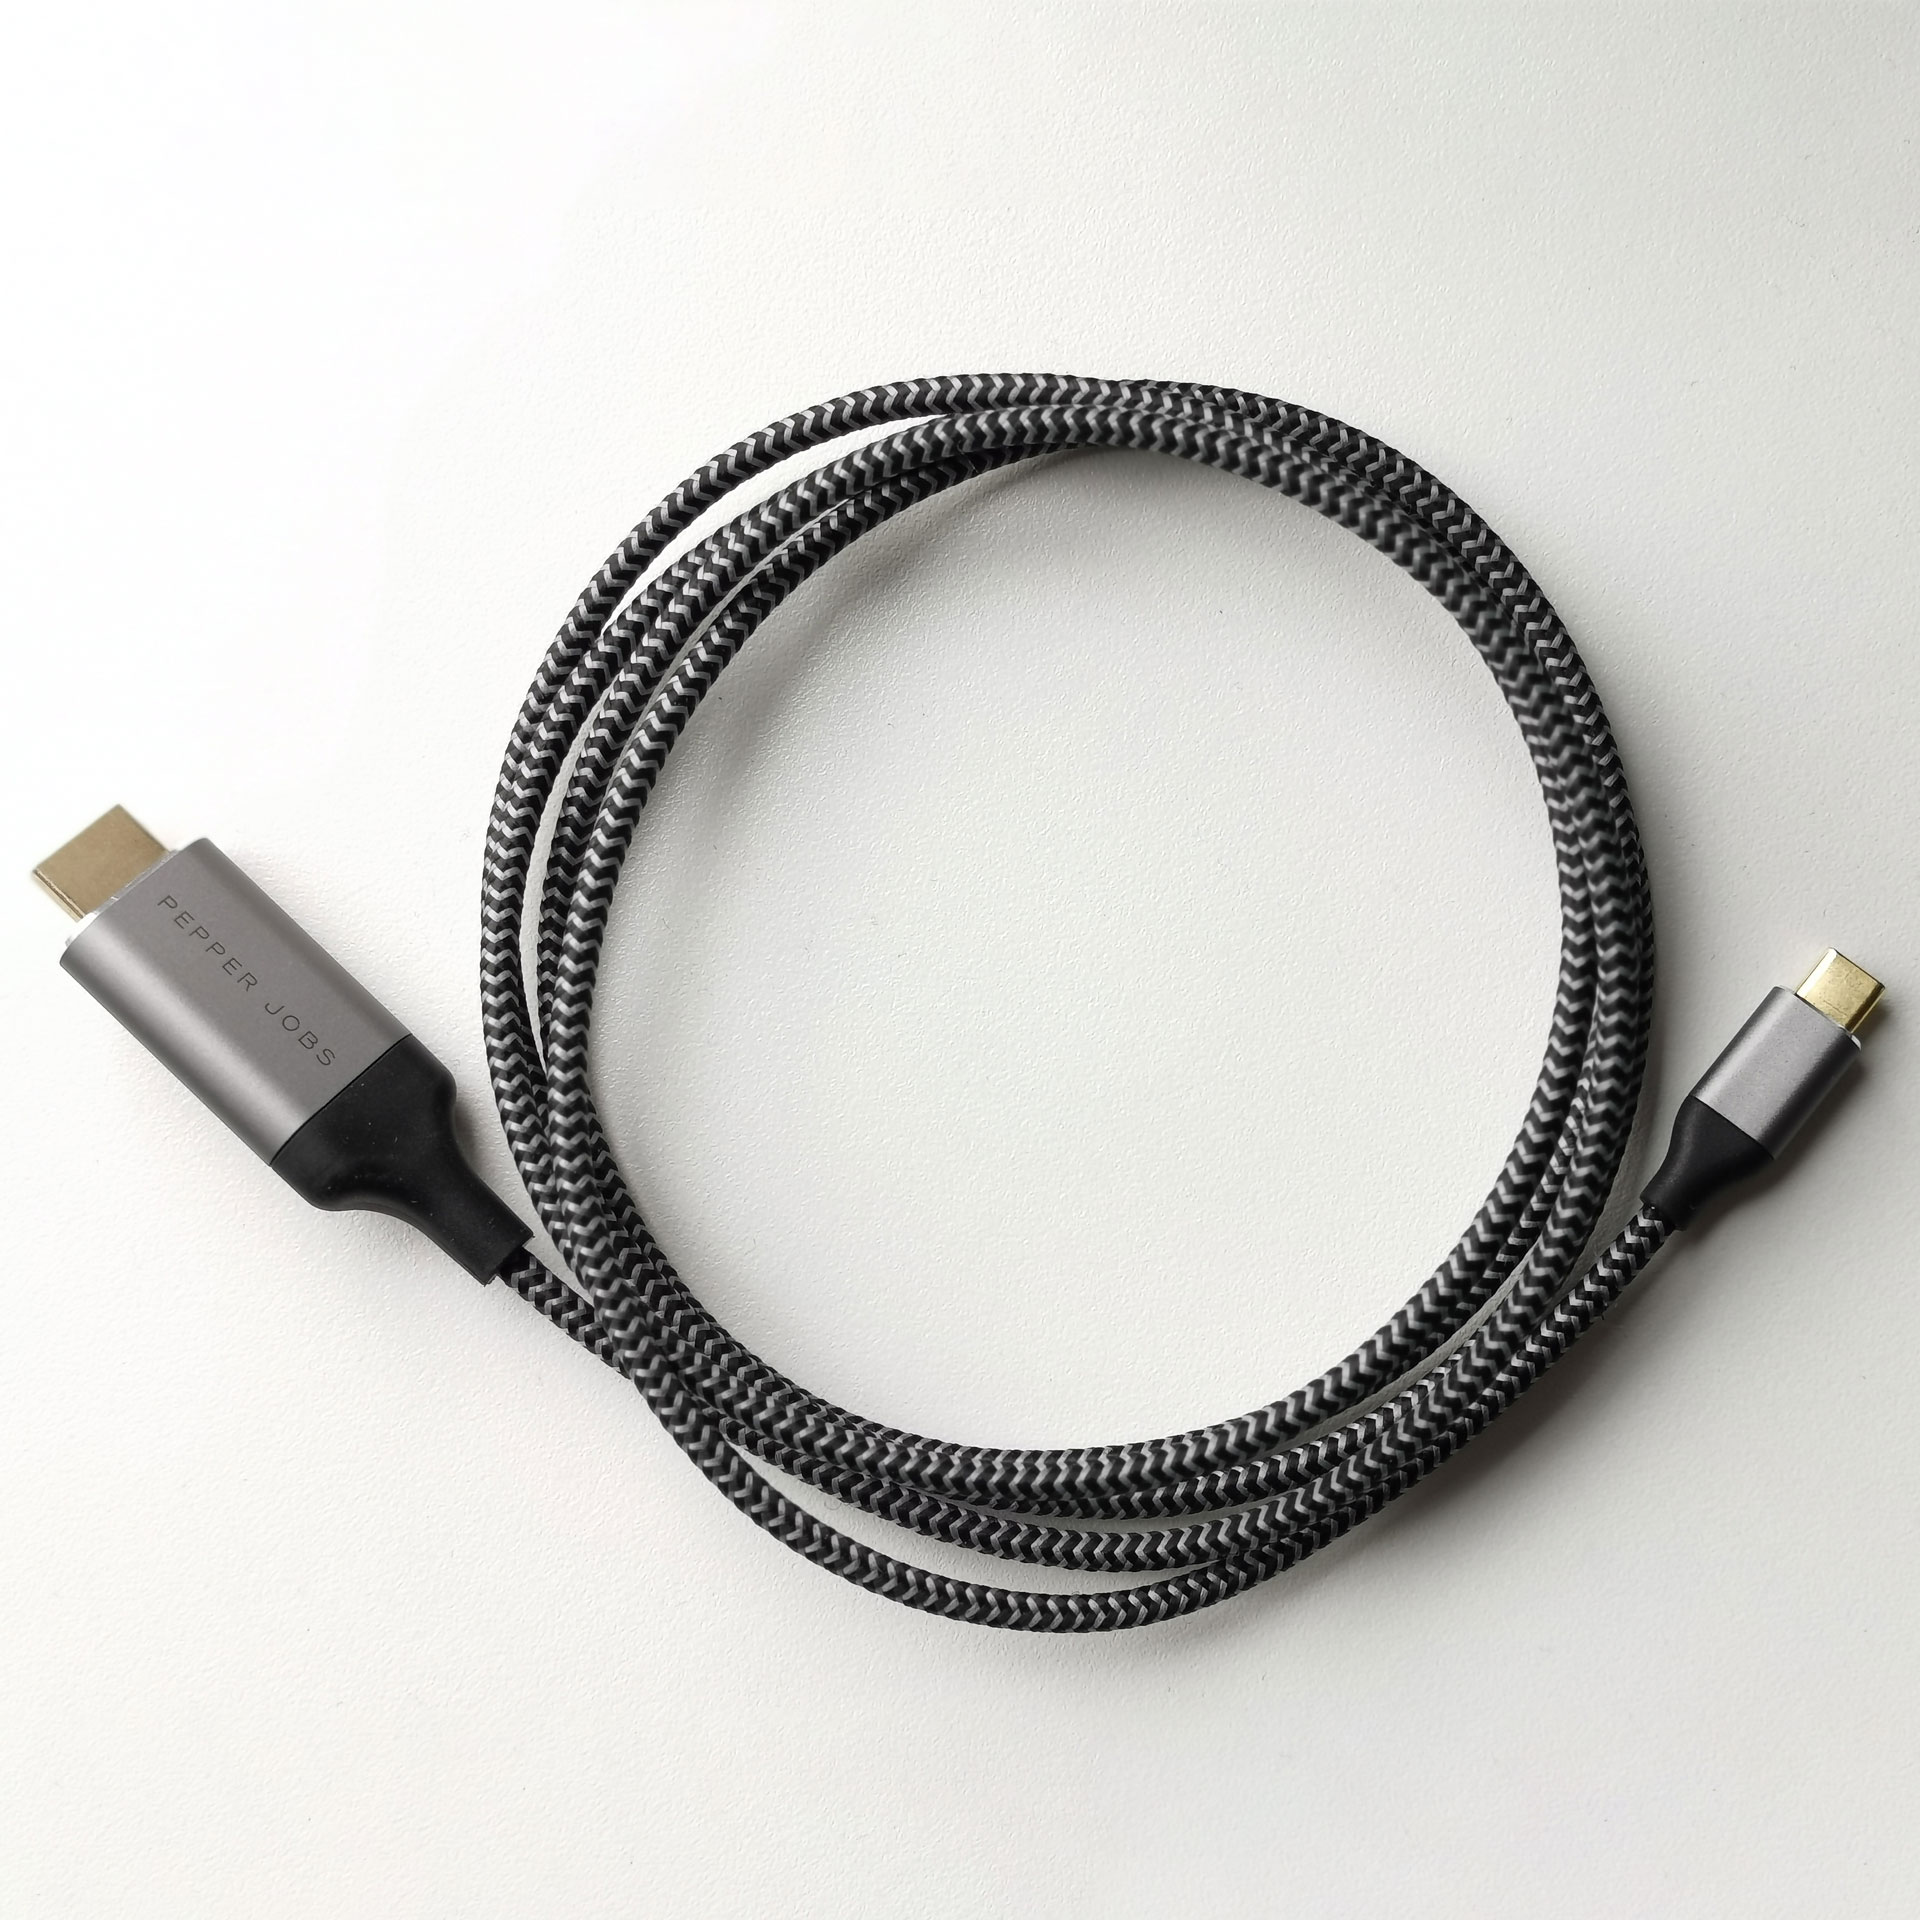 tuberculose Verwarren bevolking DVI naar HDMI kabel aanschaffen? Dit wil je weten! - GadgetGear.nl